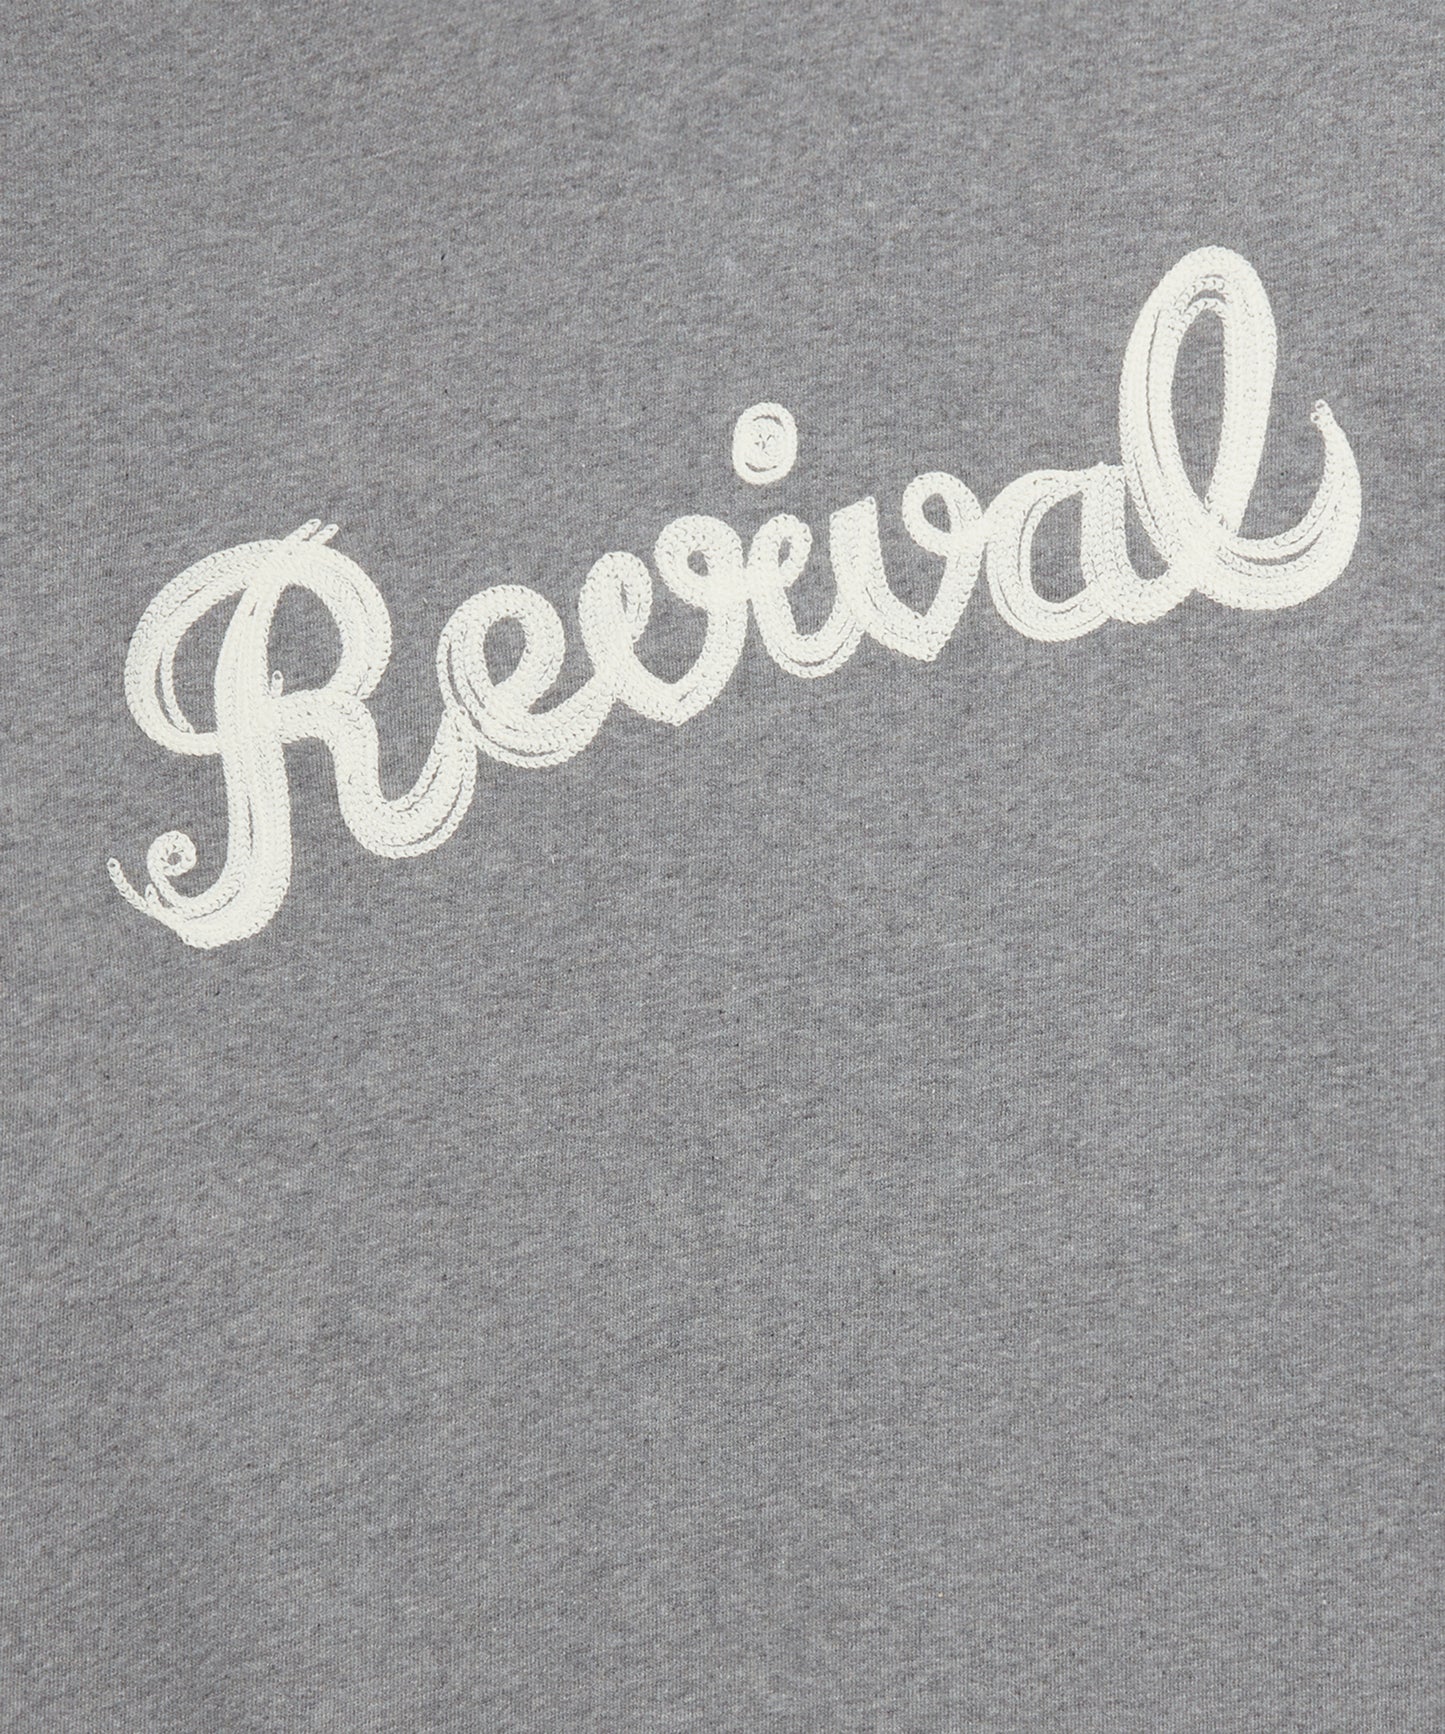 Goodwood Revival Unisex Sweatshirt